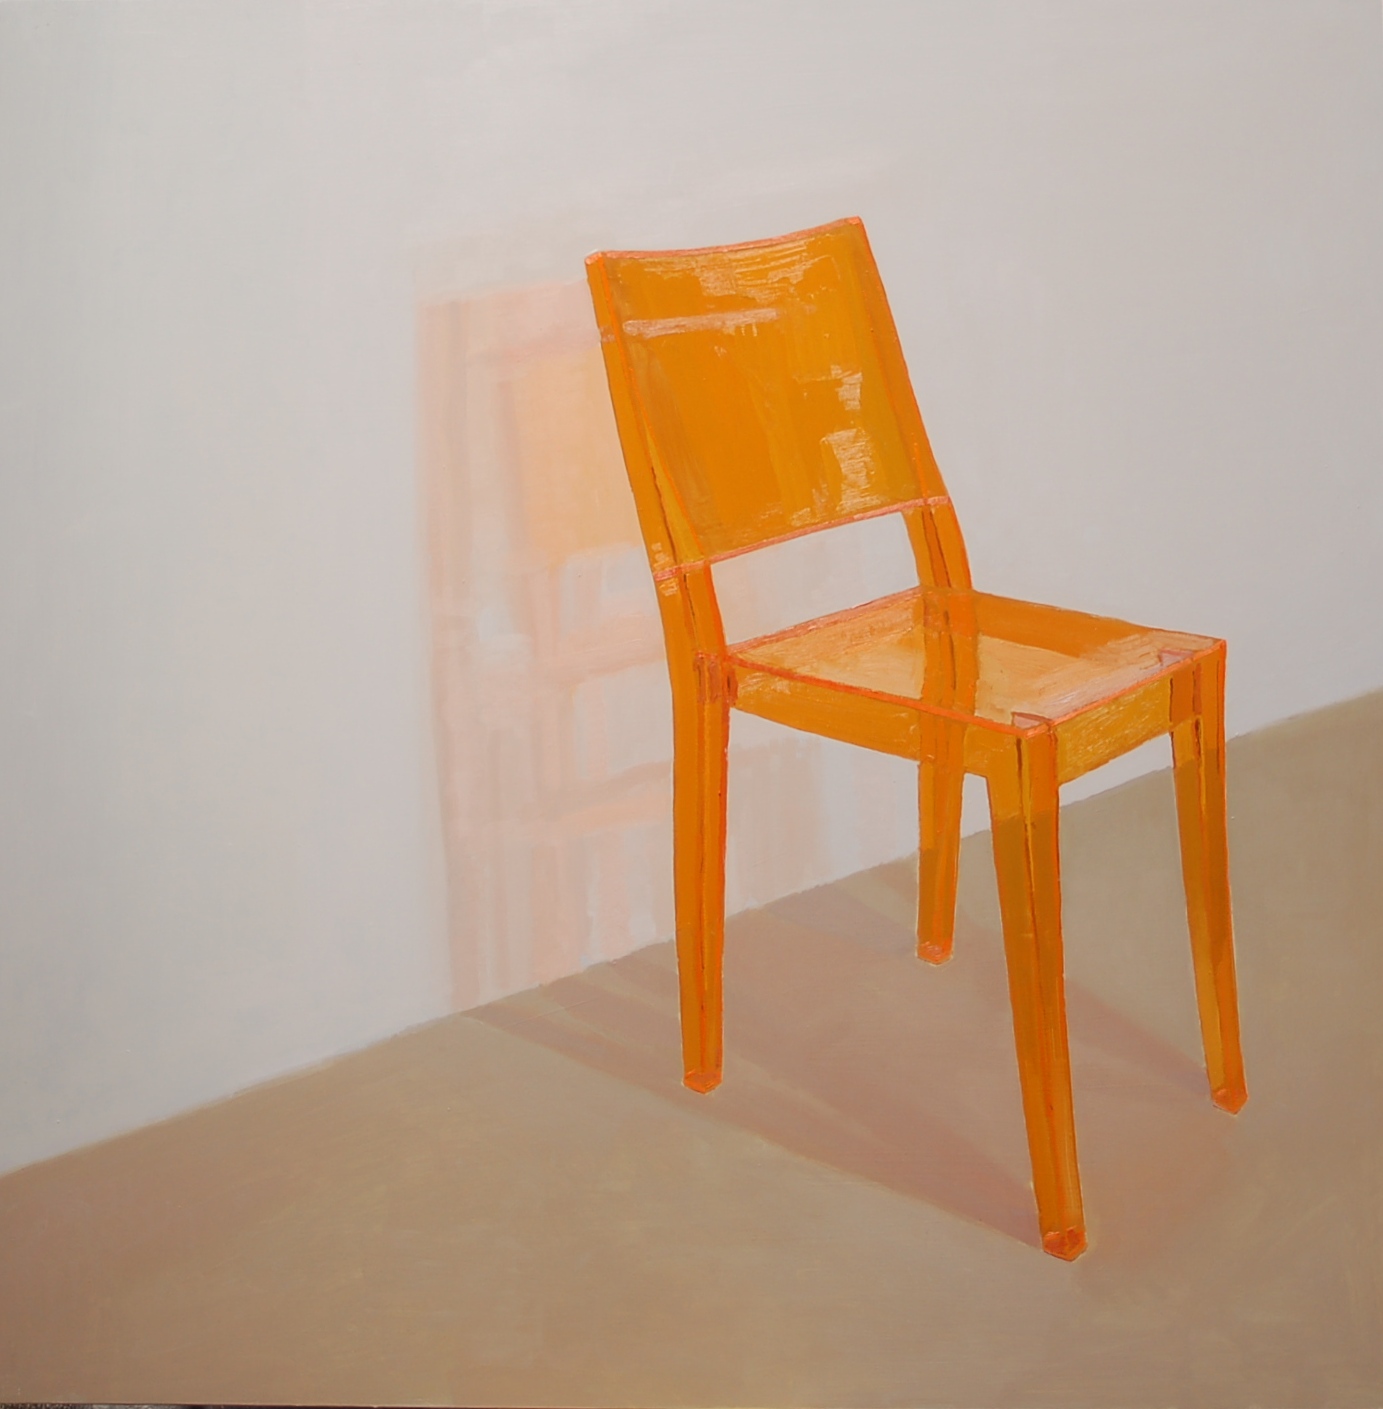 La sombra de la silla naranja (Las cosas)